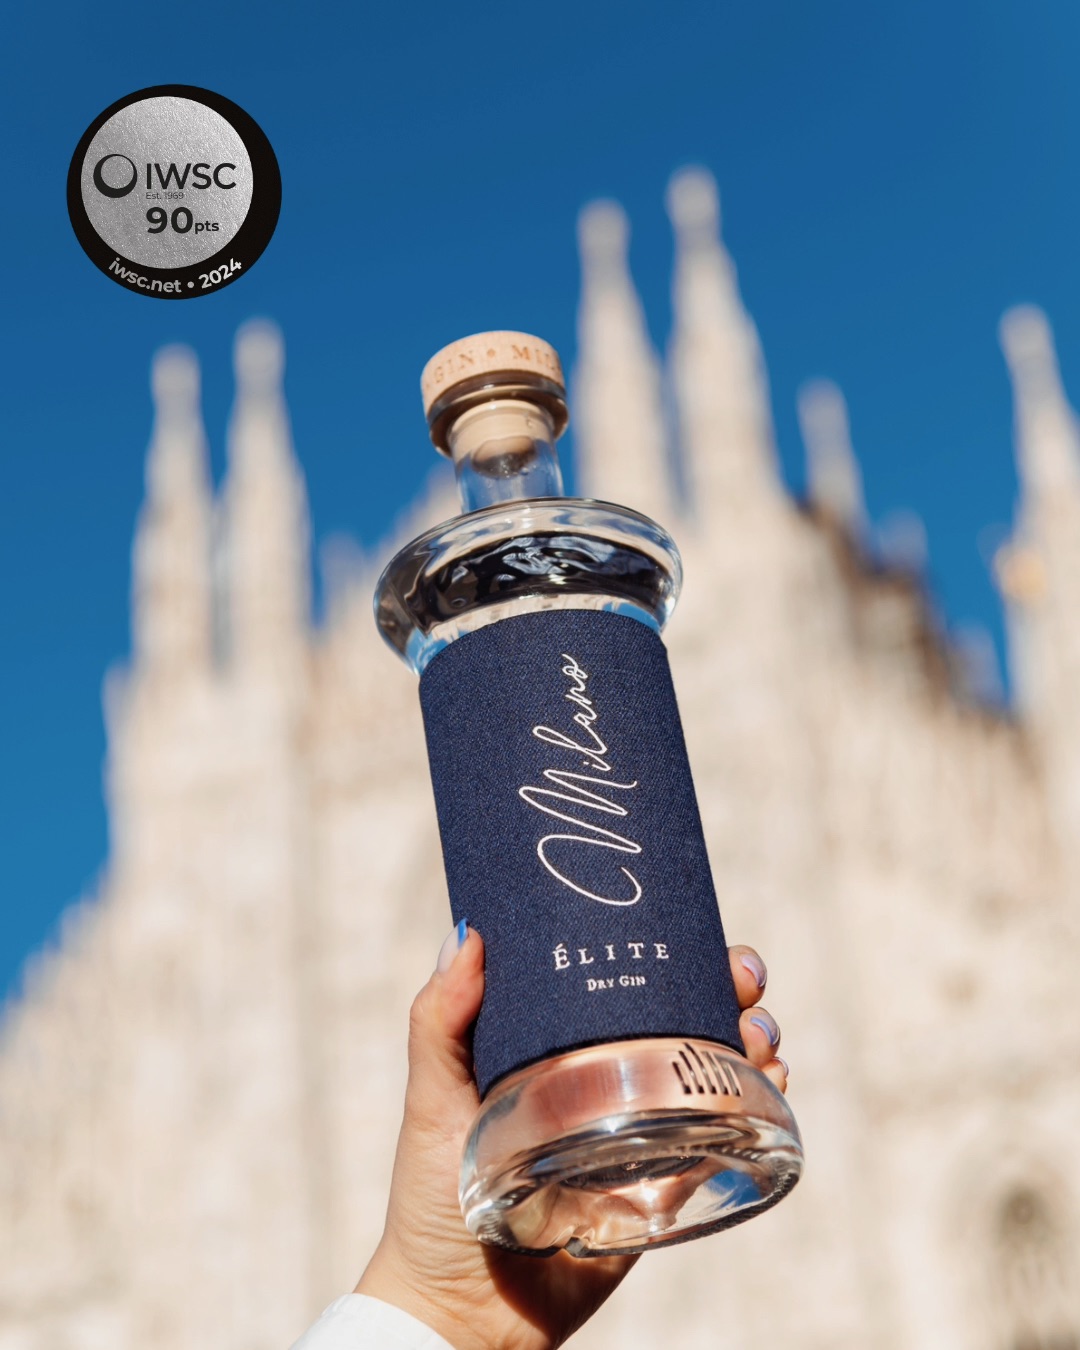  Gin Milano si aggiudica la medaglia d'argento alla International Wine and Spirits Competition di Londra 